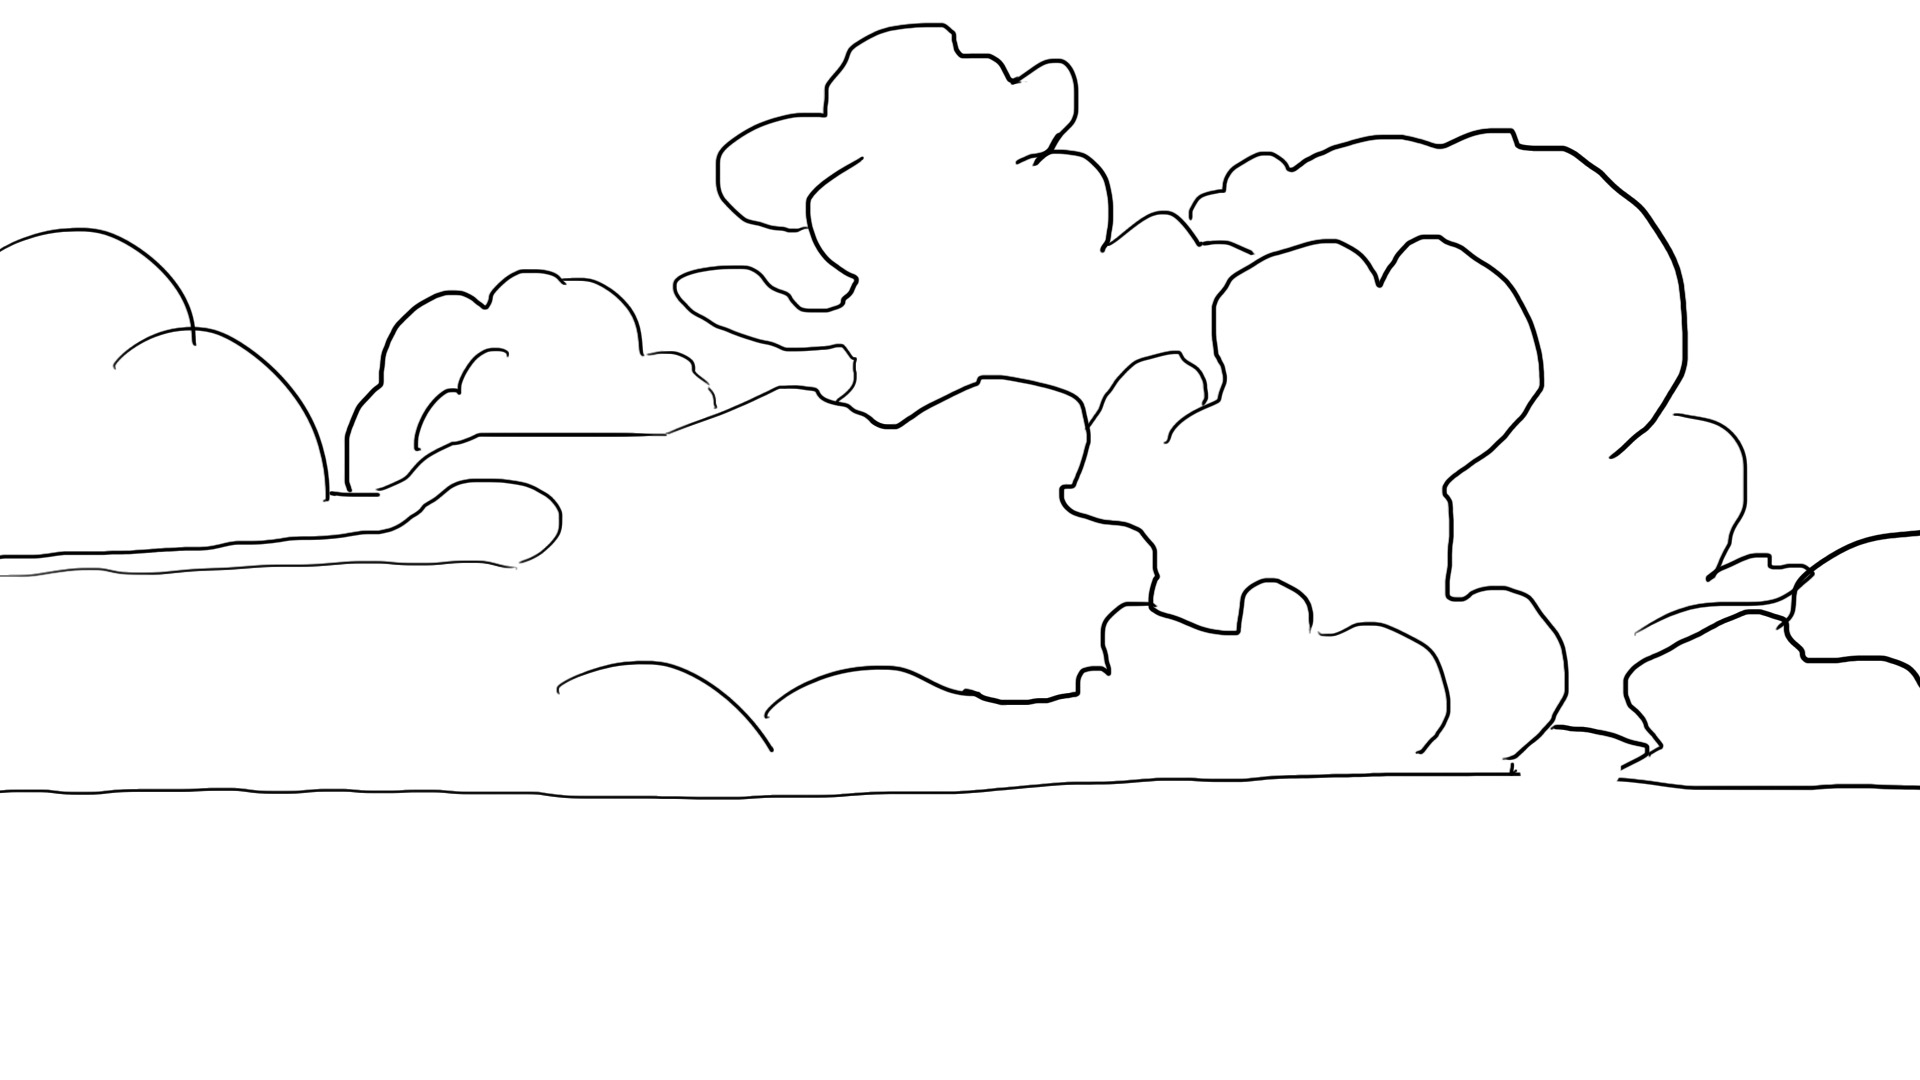 Dessiner un croquis de nuage dense